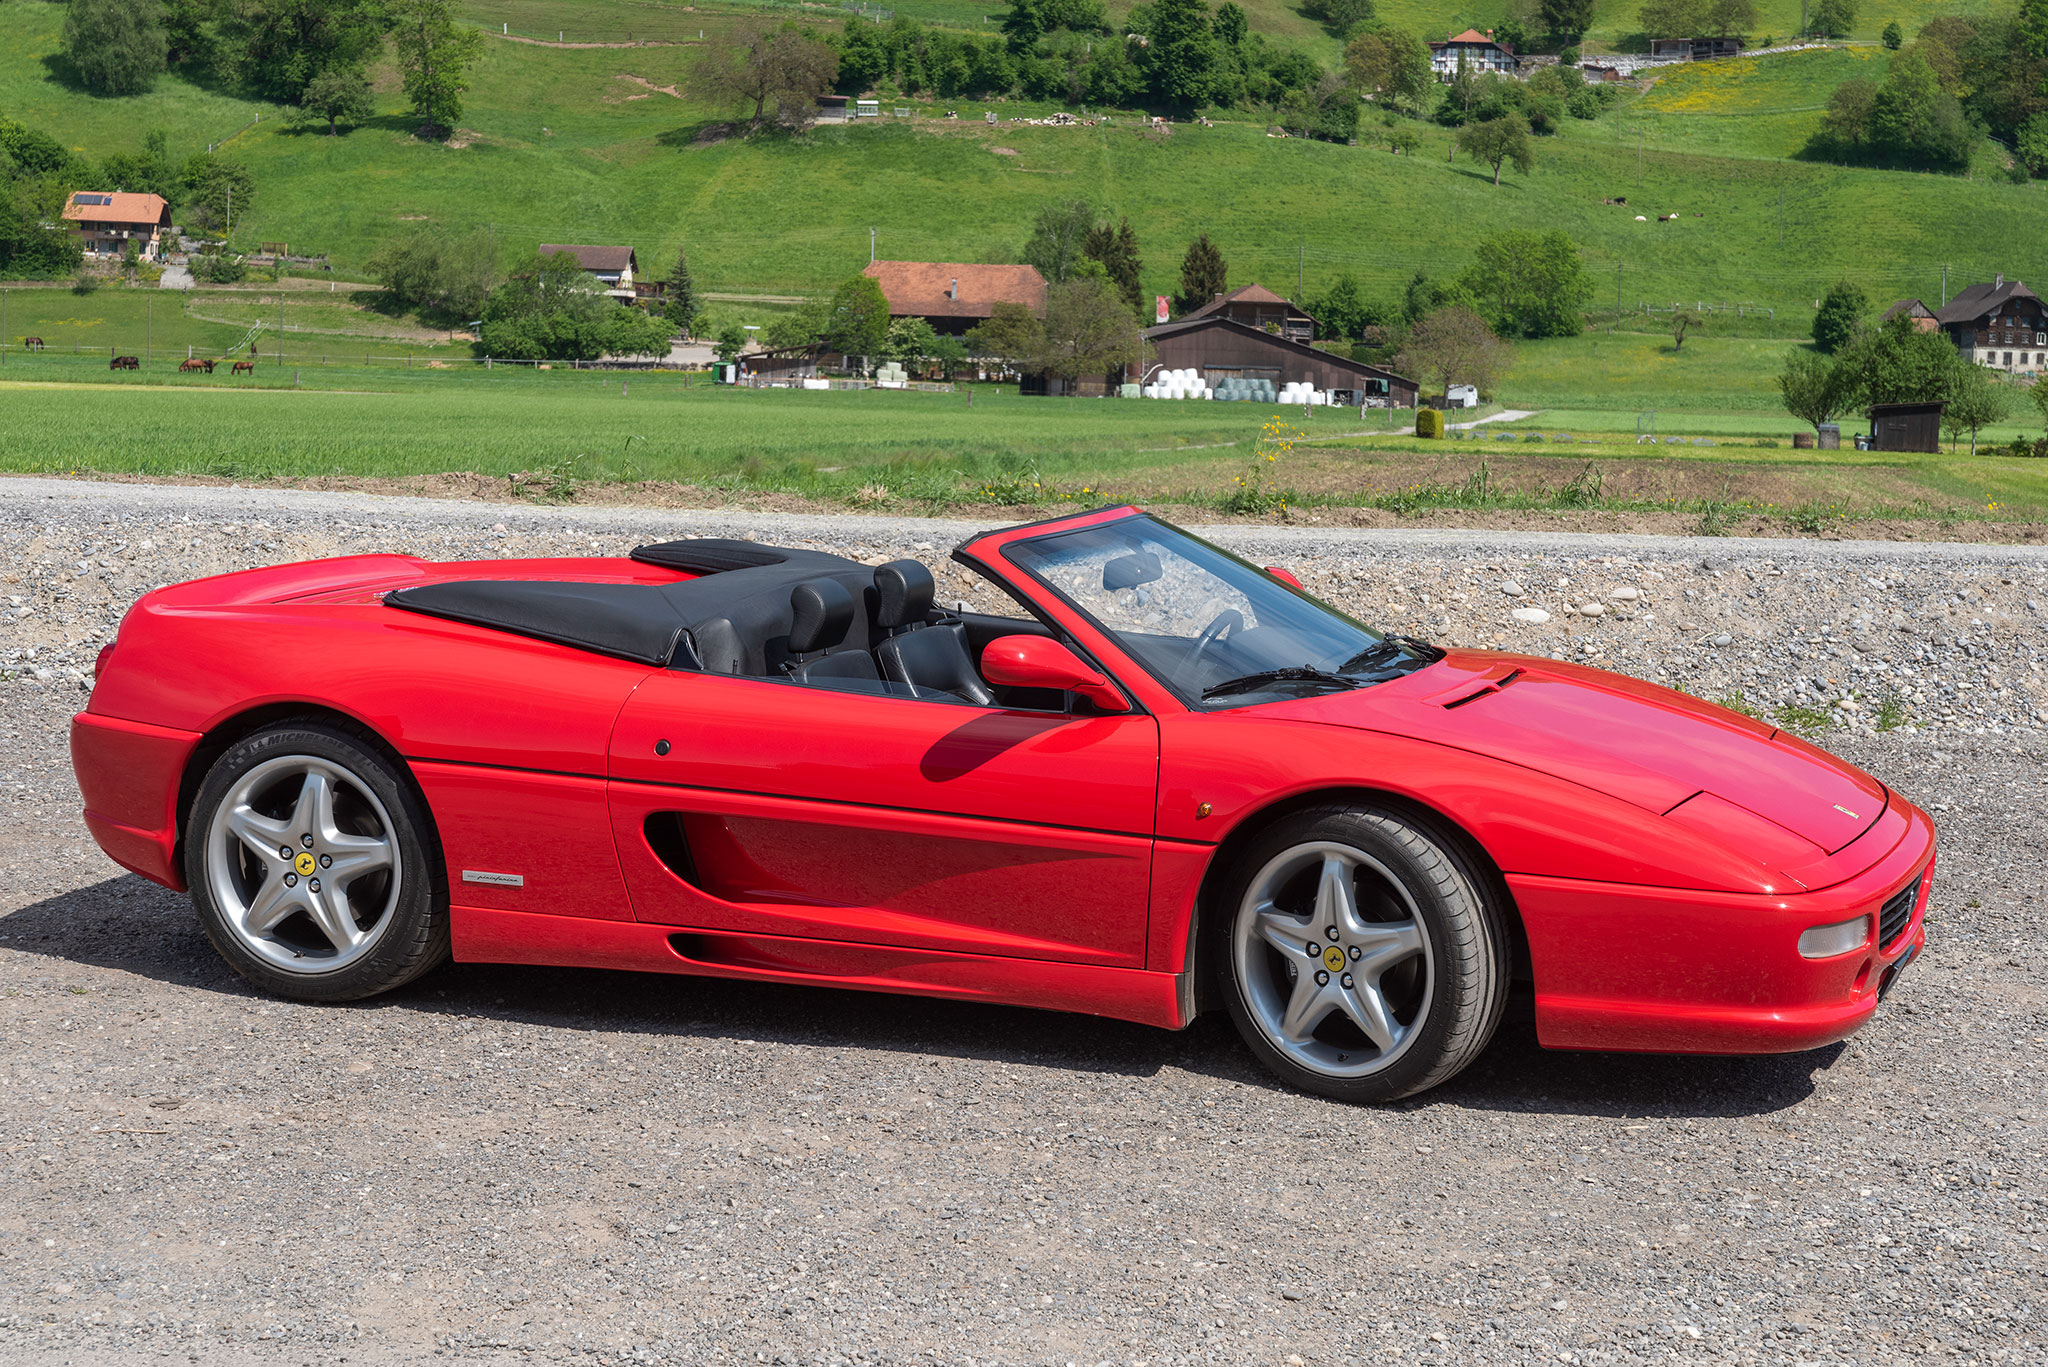 1999 Ferrari F355 F1 - Elle remplace la 348 et dévance la 360 - Enchères au Swiss Classic World.